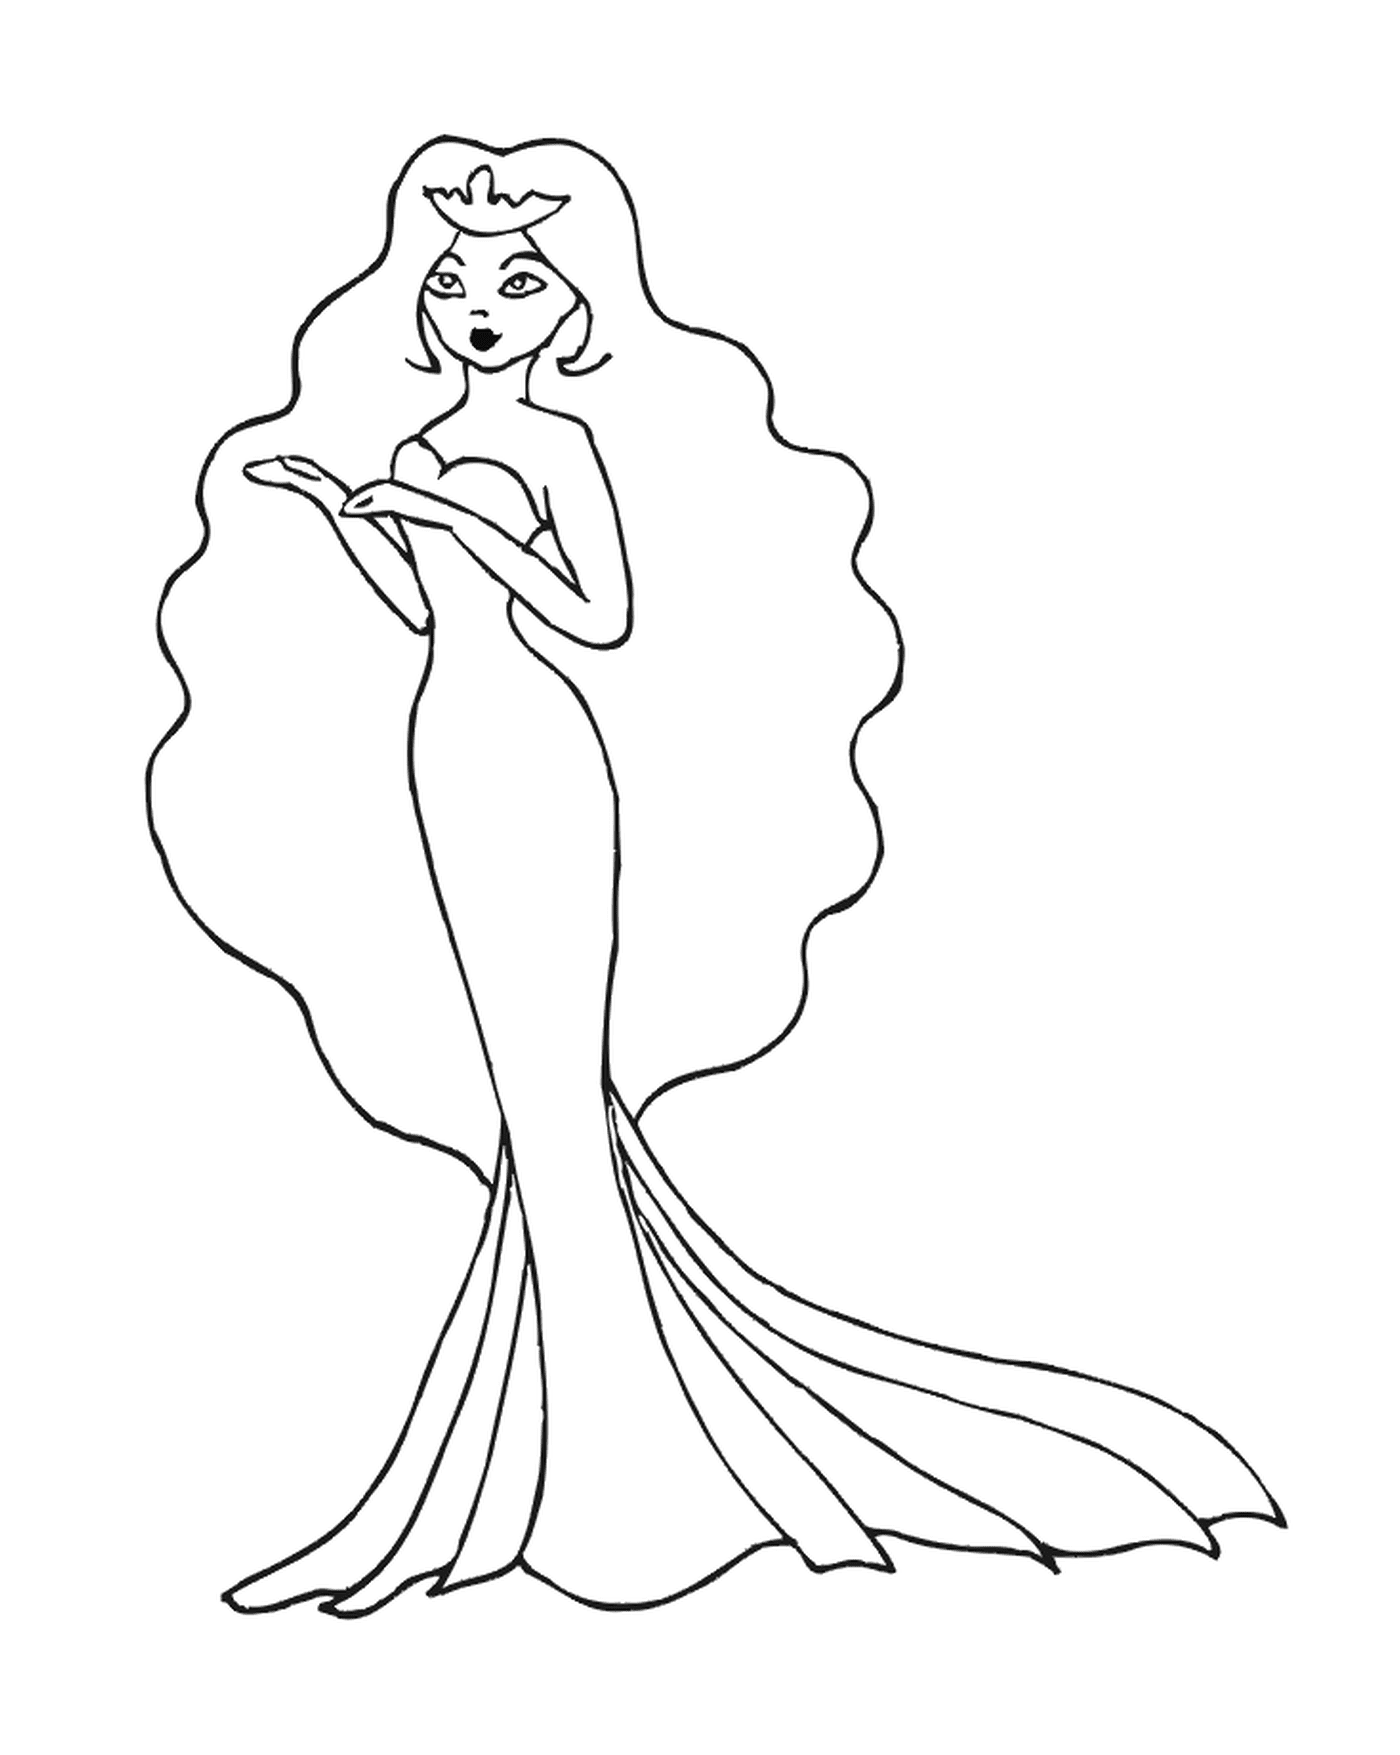  Woman in a long dress 